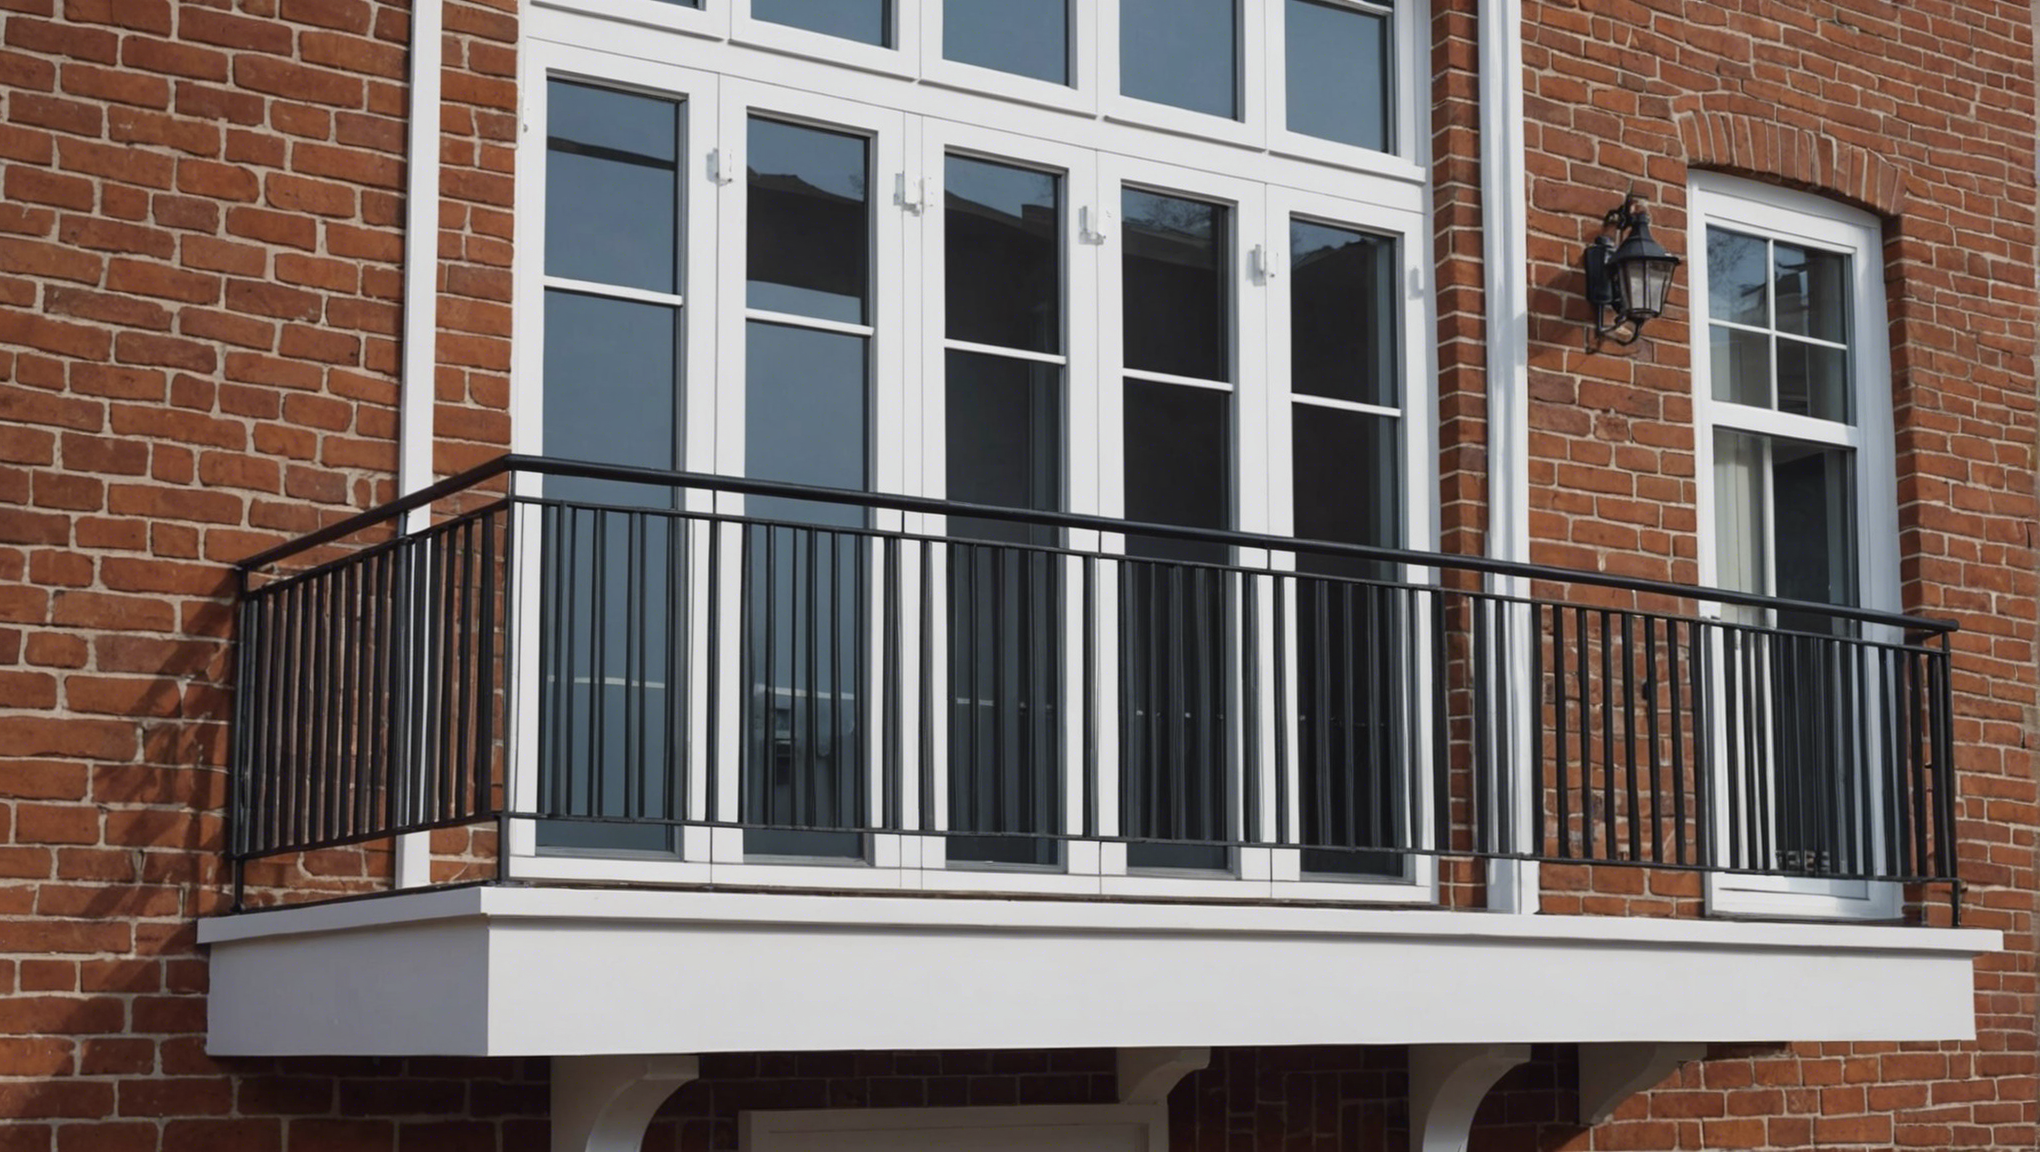 découvrez nos conseils pour bien choisir votre fenêtre garde-corps afin d'assurer la sécurité et l'esthétique de votre maison.